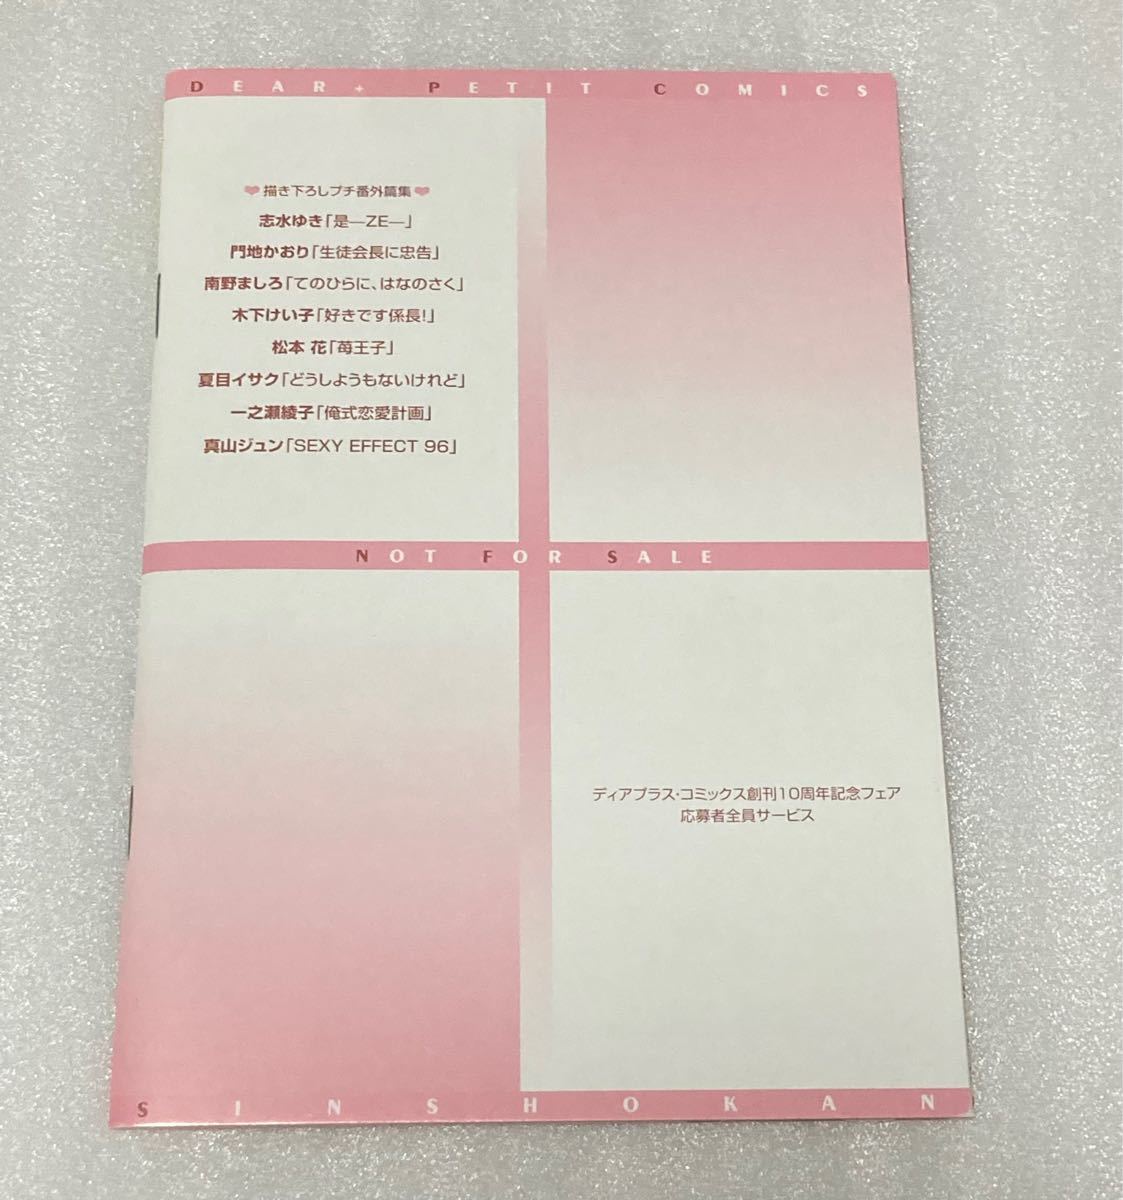 ディアプラス・コミックス 創刊10周年記念 描き下ろしプチコミックス 小冊子 BL